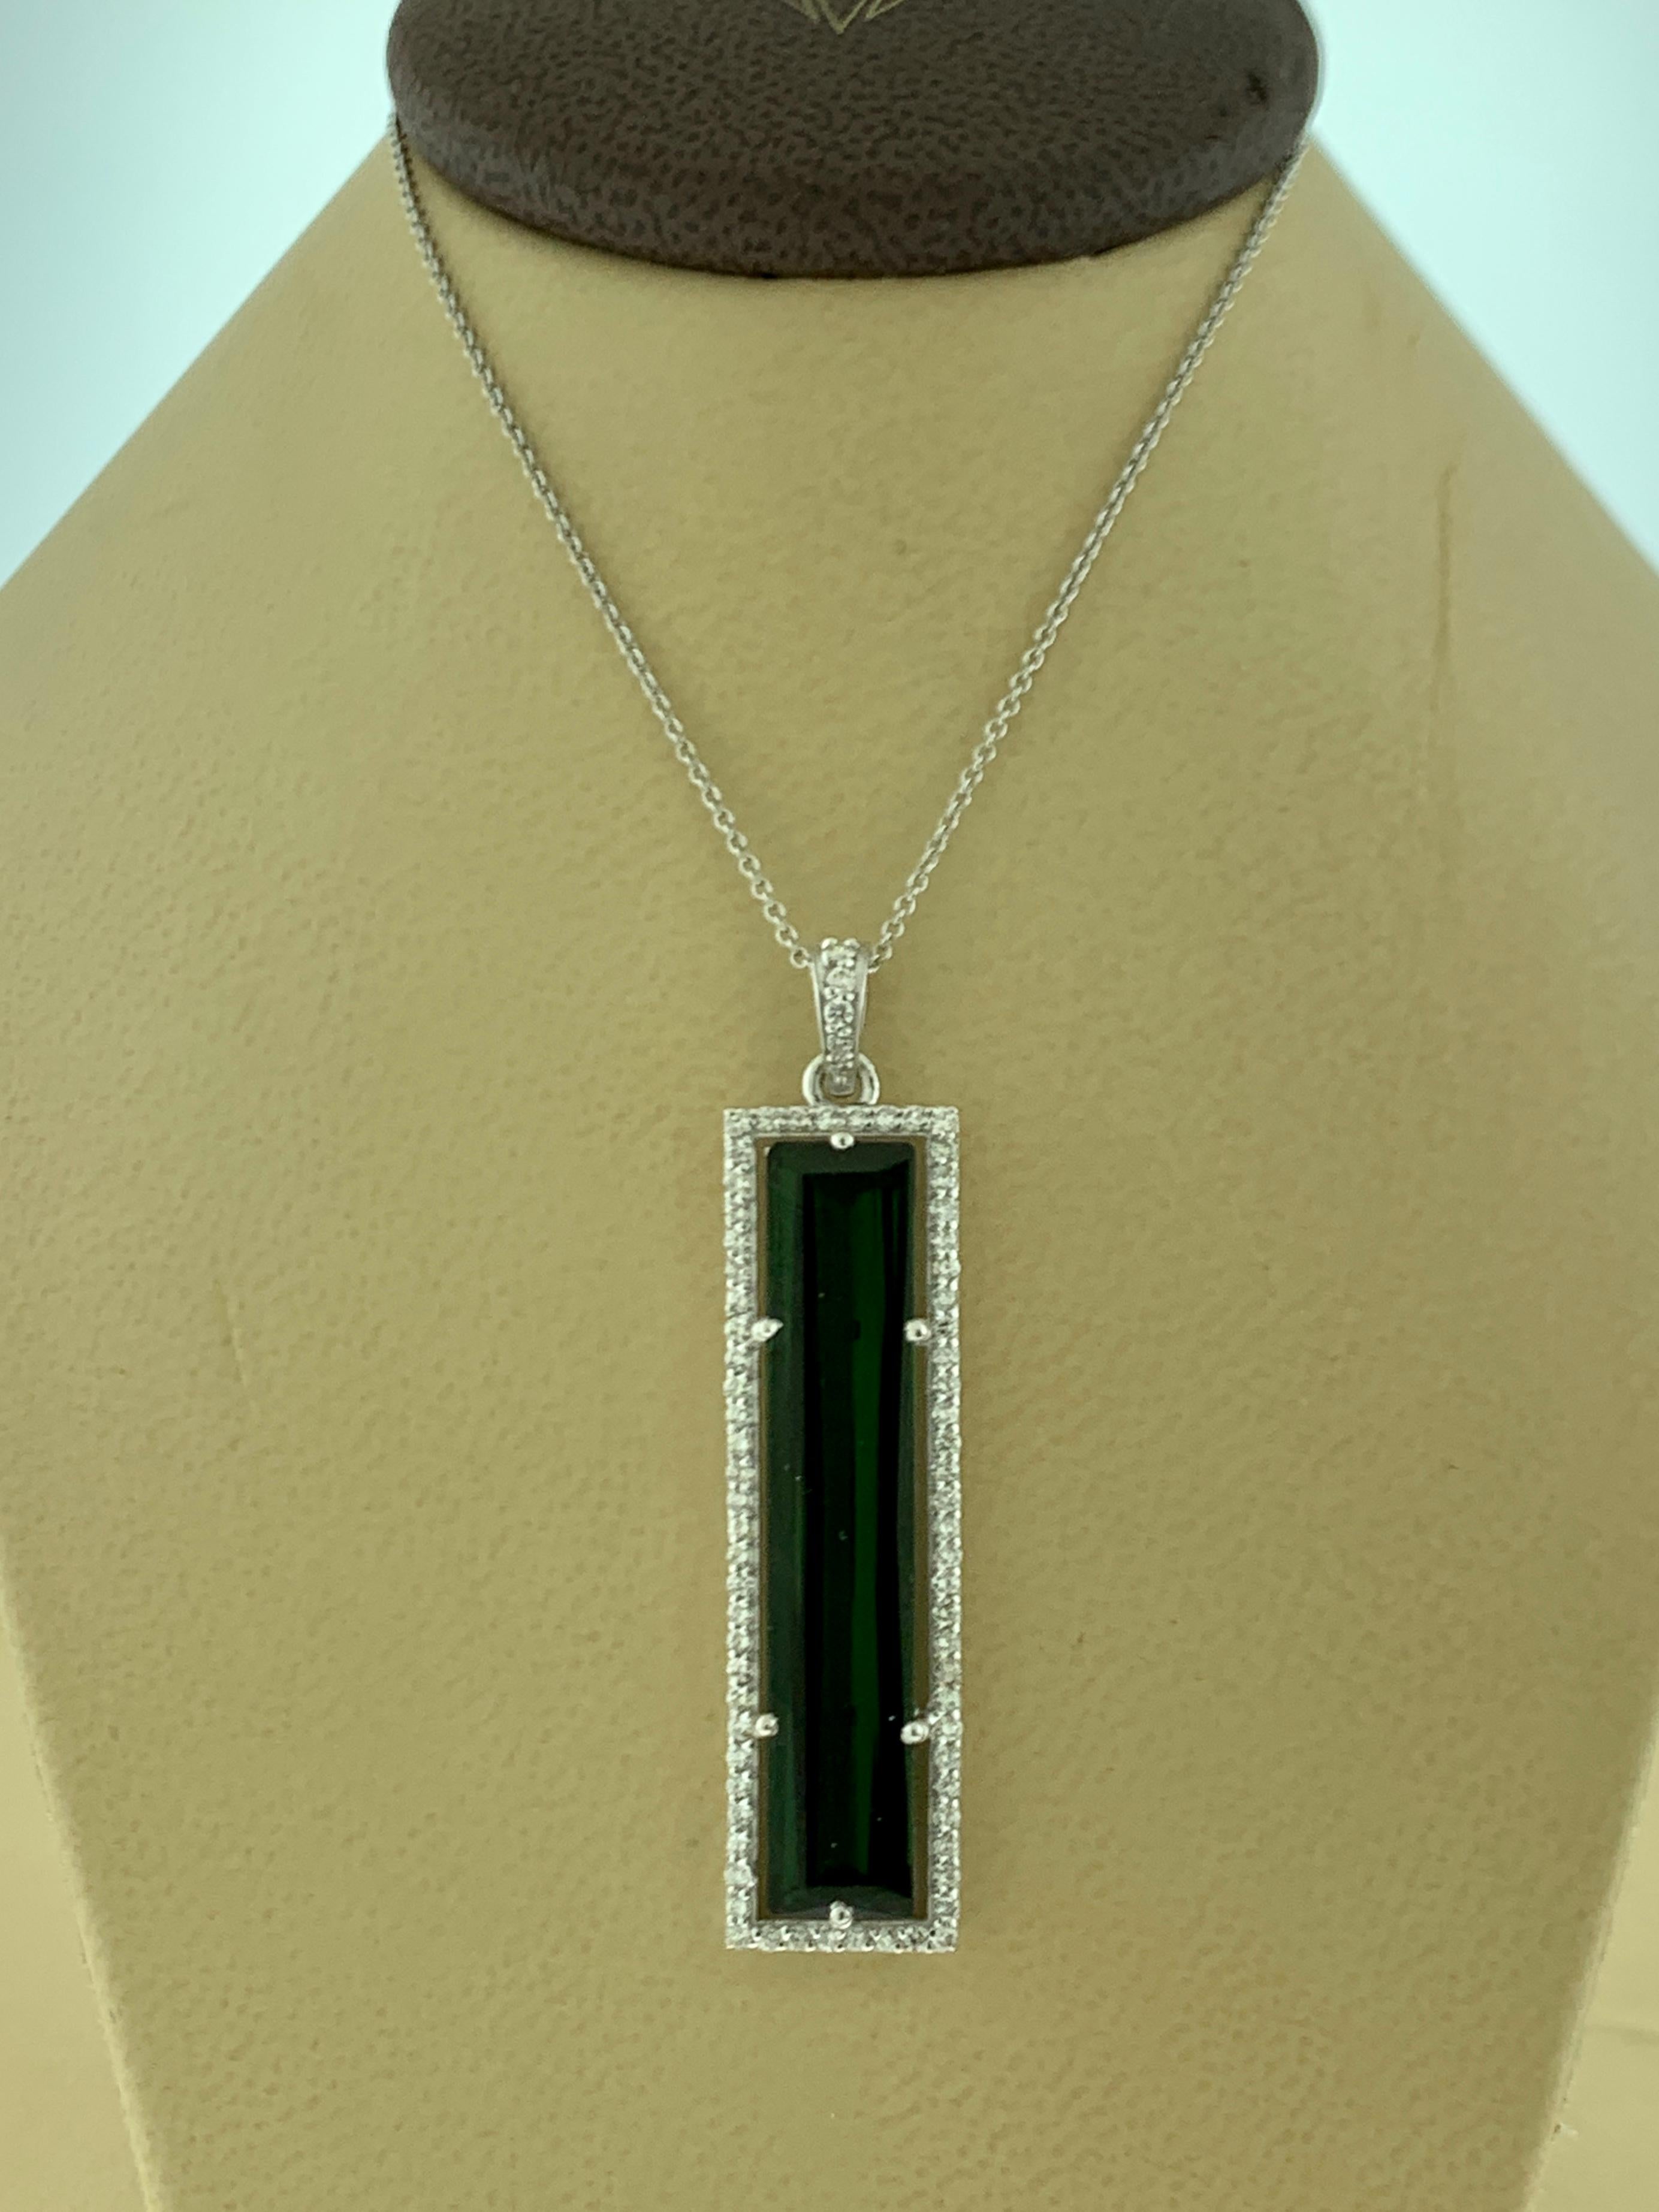 Cushion Cut 13 Carat Green Tourmaline and 1.6 Carat Diamond Pendant / Necklace 18 Karat Gold